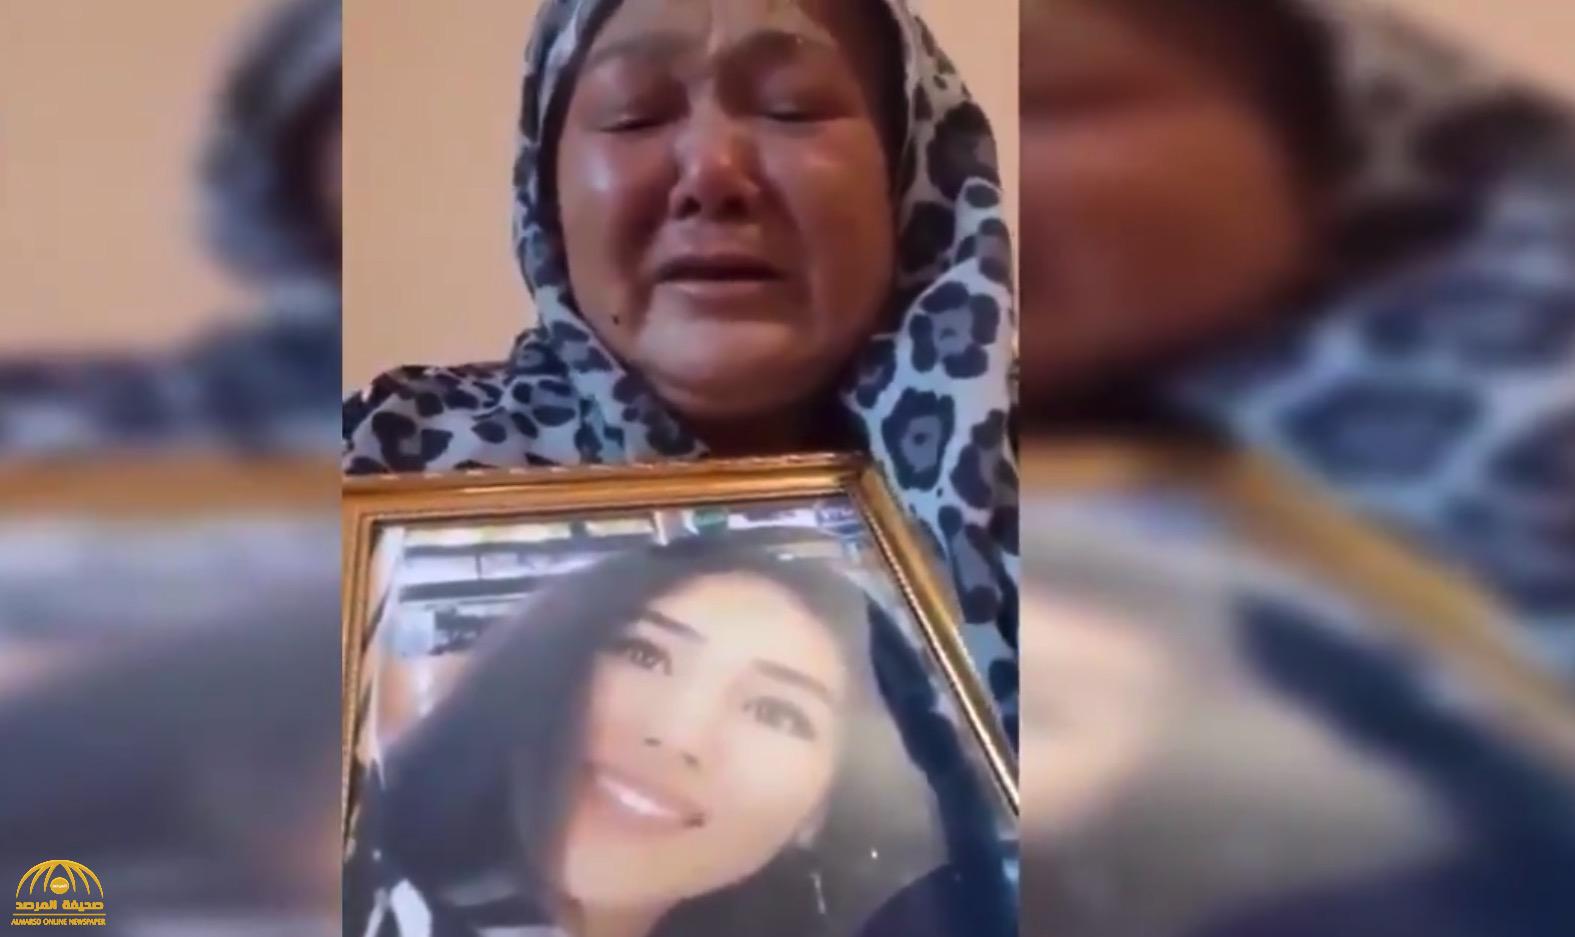 شاهد: والدة الفتاة التي اغتصبها وقتلها مقرب من أردوغان تنهار من البكاء بعد رؤيته في "آيا صوفيا"